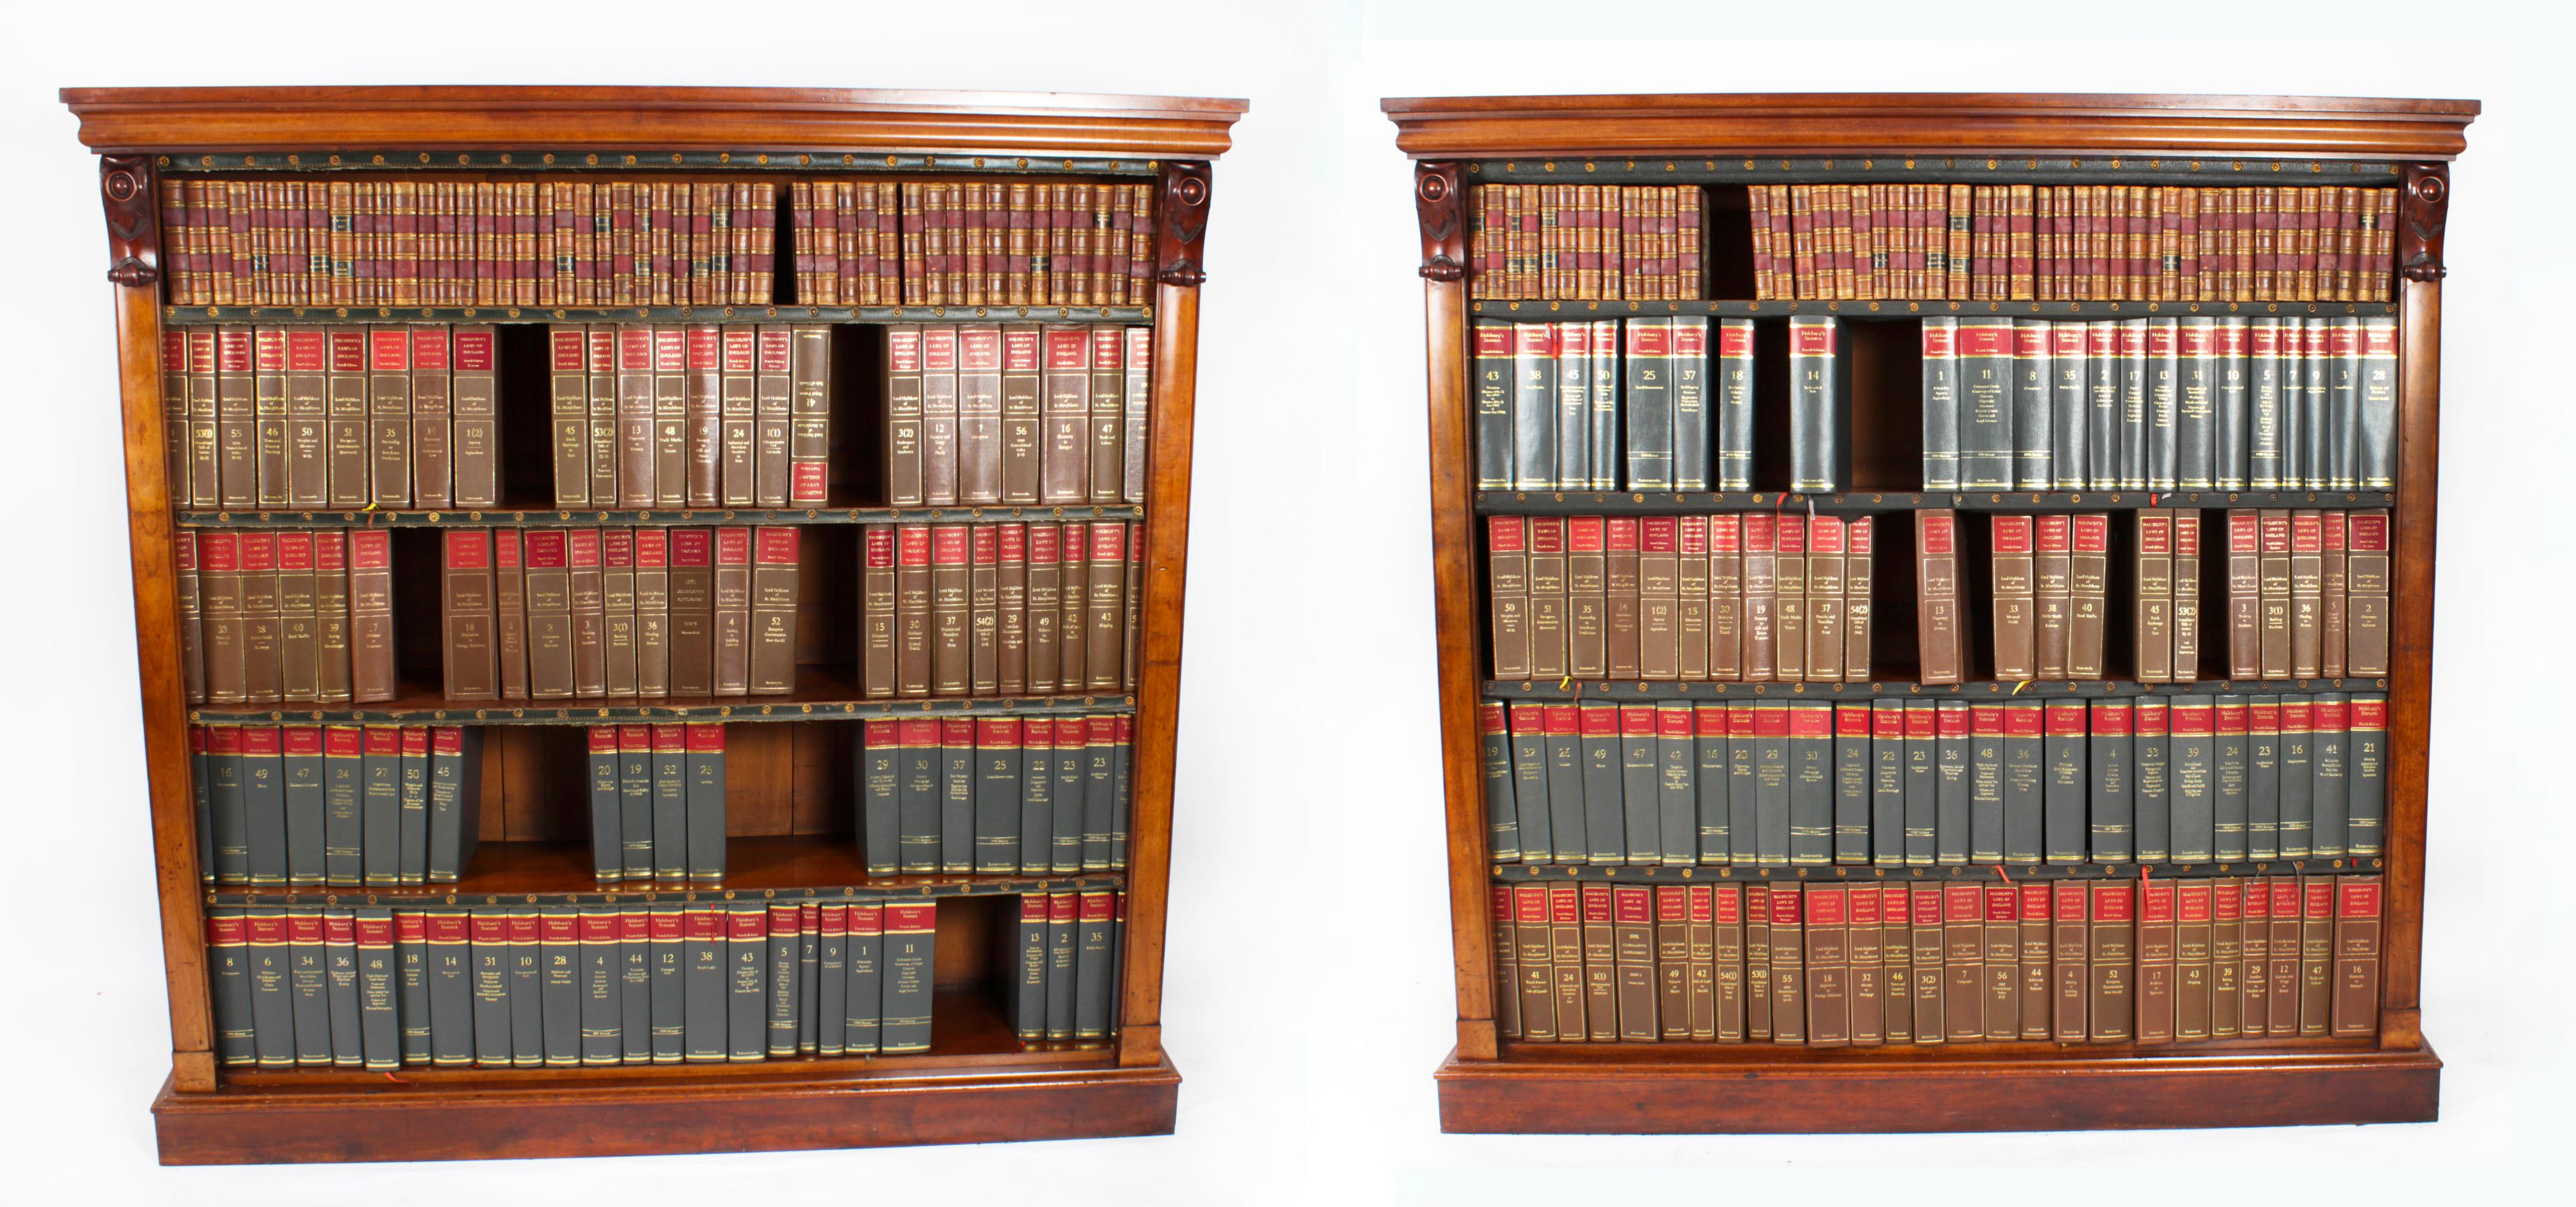 Il s'agit d'une magnifique paire de bibliothèques ouvertes en acajou de l'époque victorienne, datant d'environ 1870.
 
Les bibliothèques sont dotées d'élégantes corniches rectangulaires à gradins et comportent chacune quatre étagères réglables. La